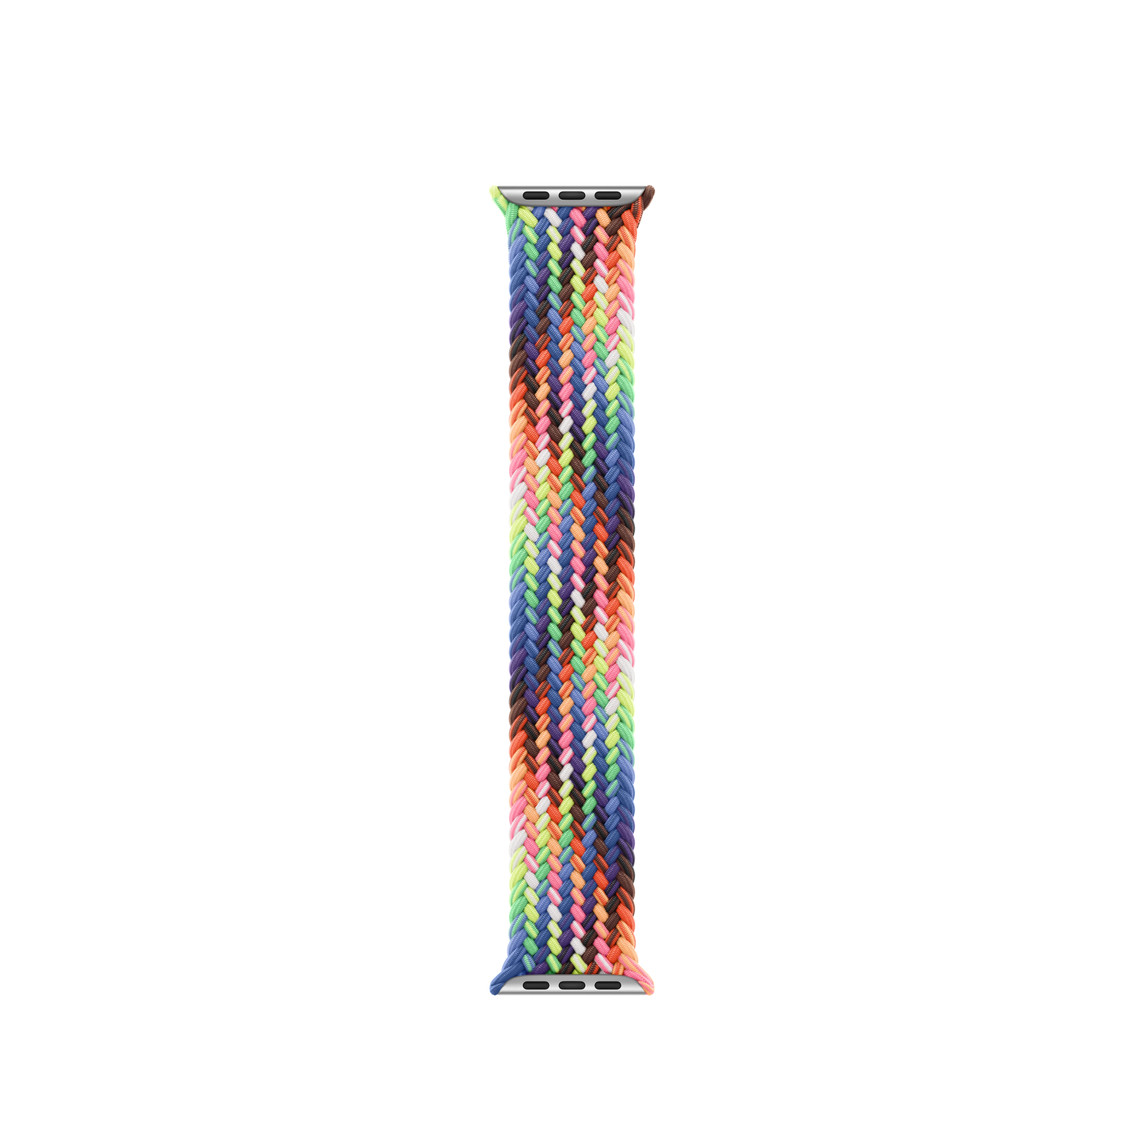 圖片展示驕傲特別版編織單圈錶環錶帶，採用一系列霓虹色線材編織而成，靈感源自鮮活的彩虹驕傲旗，無錶扣或無扣環。